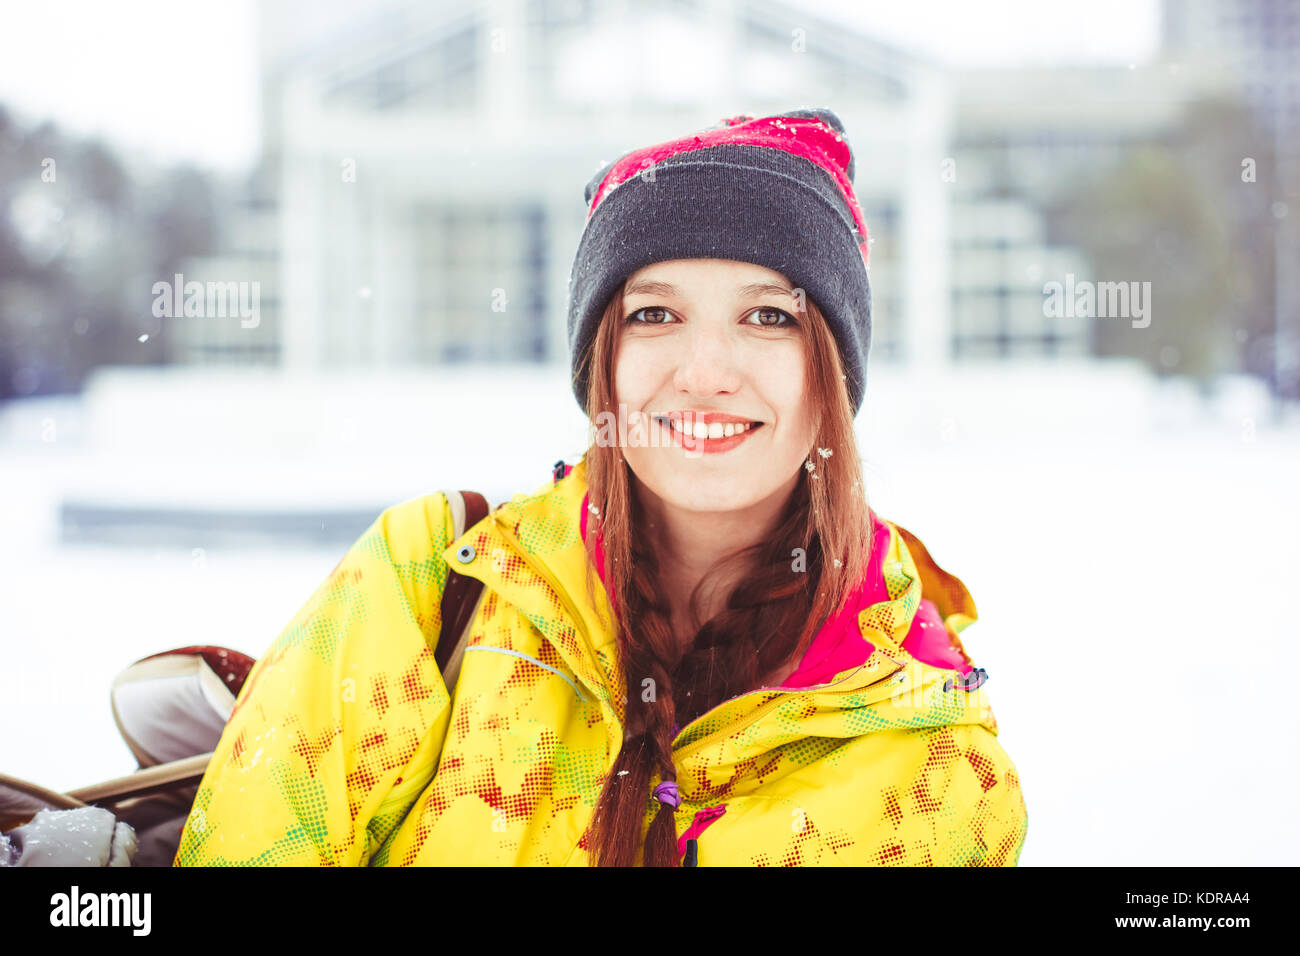 woman winter jacket Stock Photo - Alamy